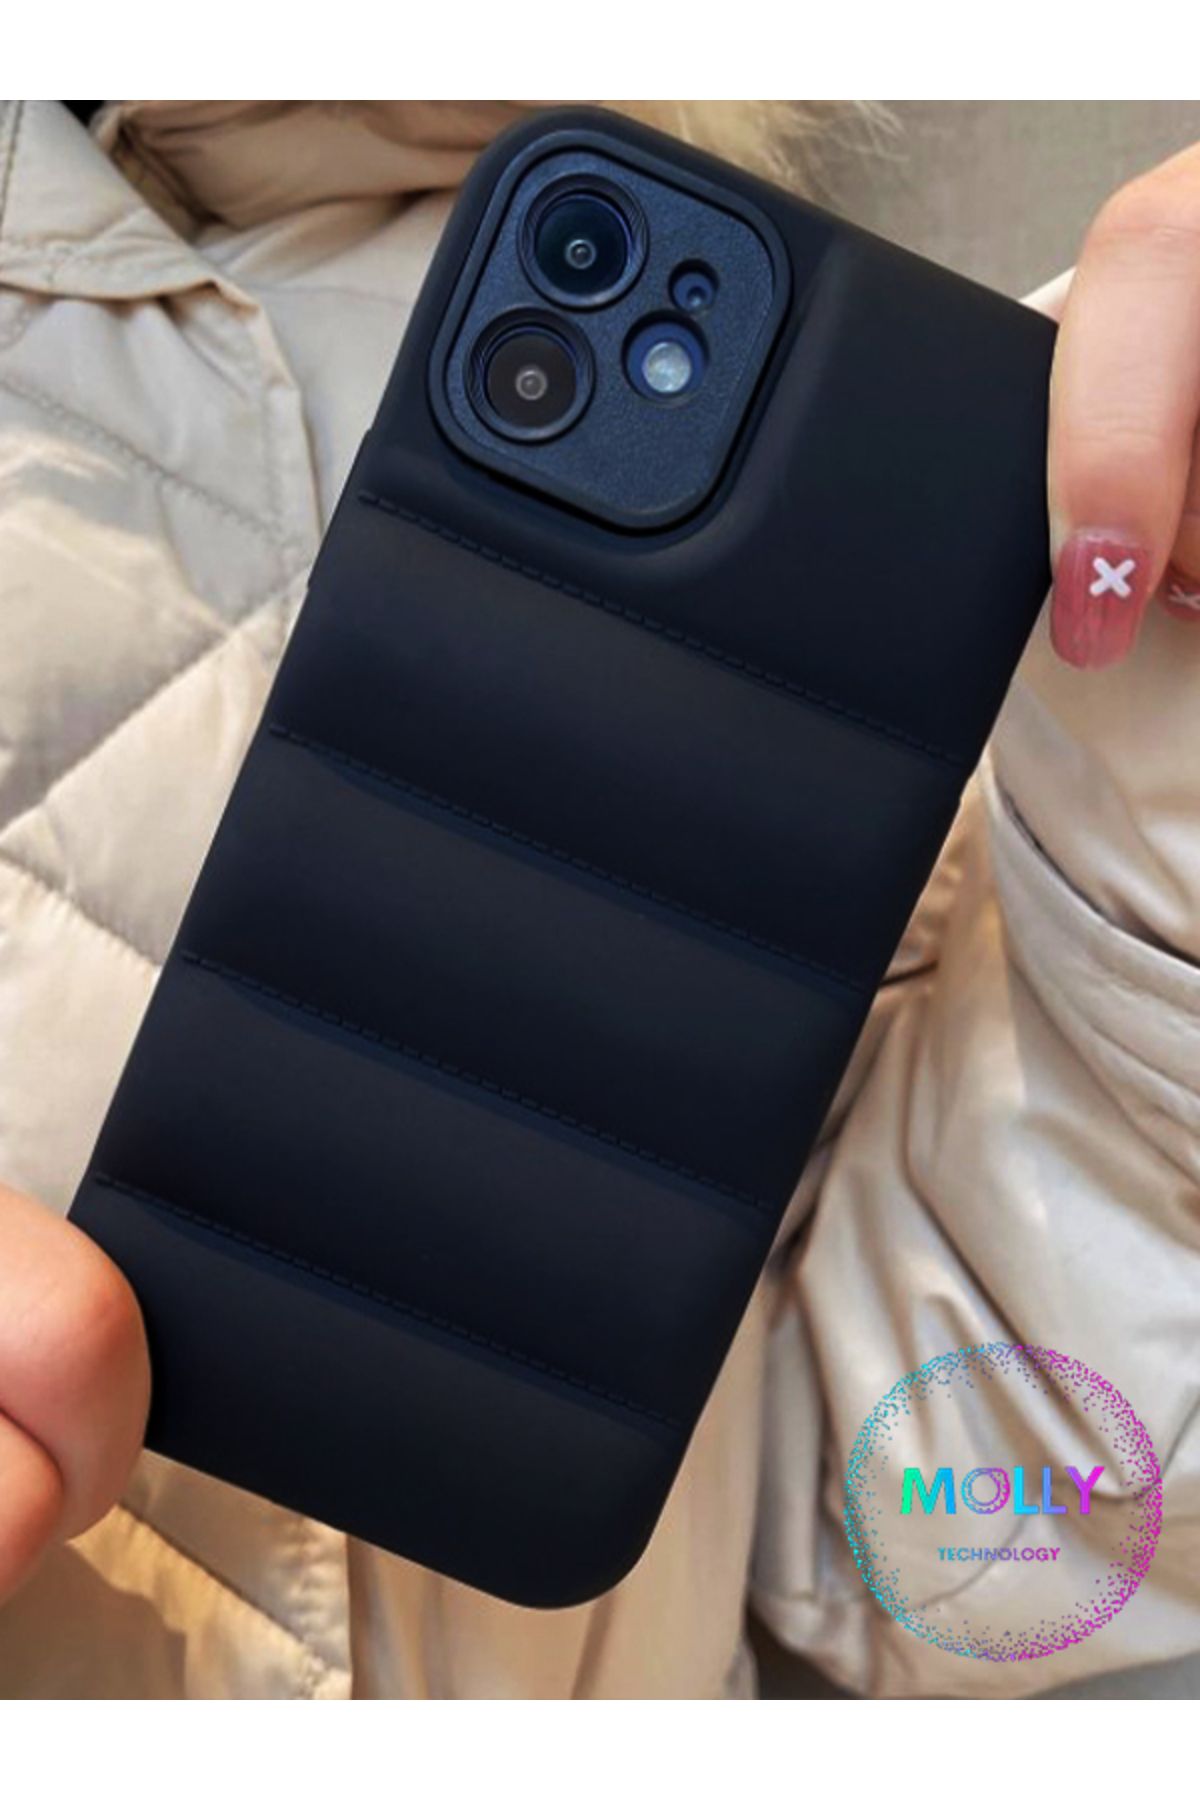 Molly iPhone 11 İçin Siyah Puffer Airbag Şişme Mont Tasarımlı Silikon Kılıf